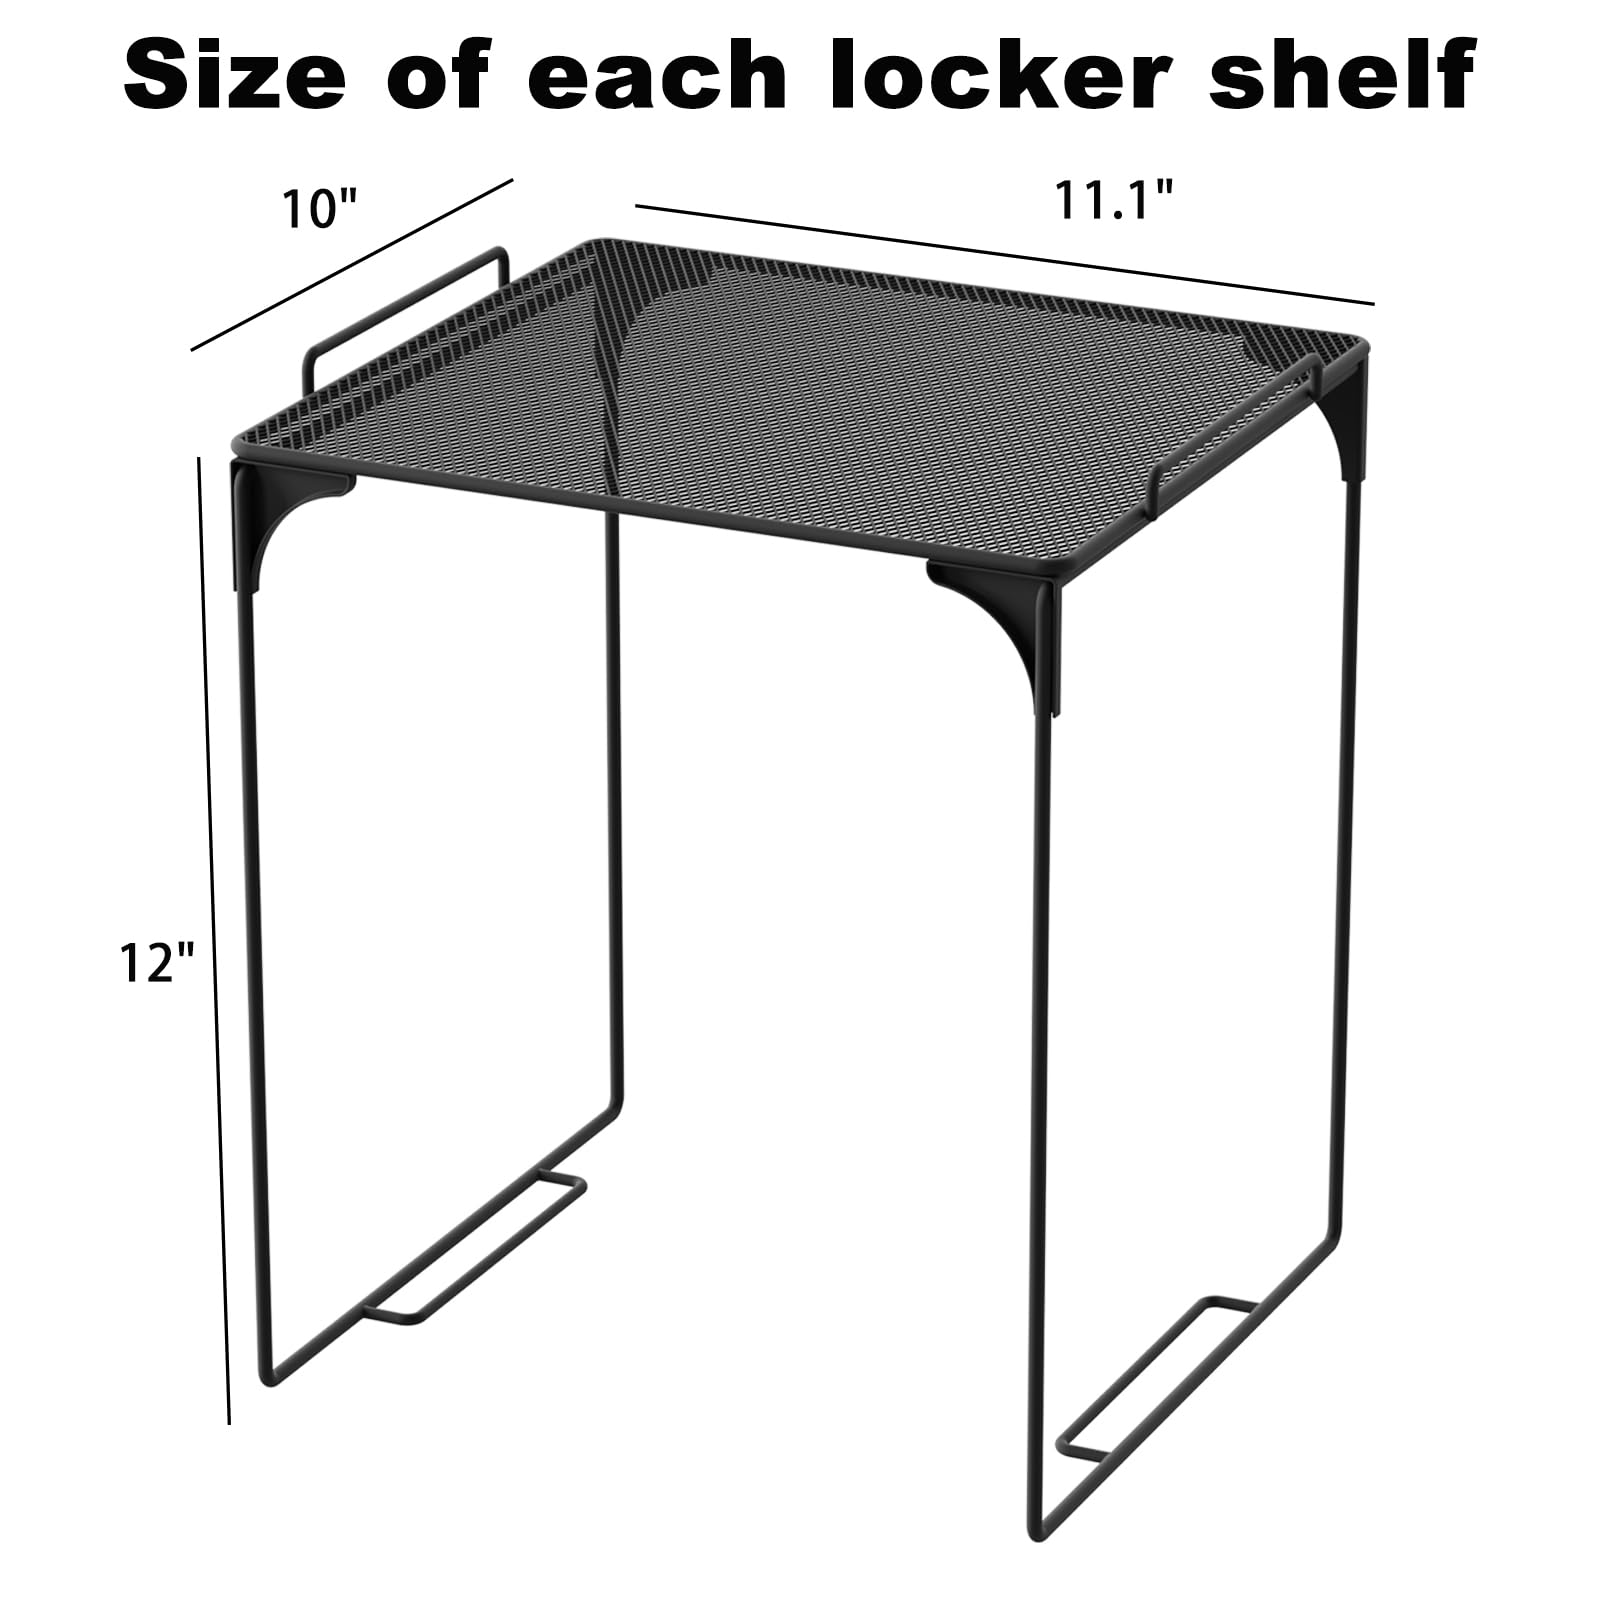 Svartur Locker Shelf for School Locker, Stackable Locker Shelves for Locker Decoration, Tall Locker Organizer Shelf for Work, Back to School Essentials Locker Accessories, Pack of 2, Black